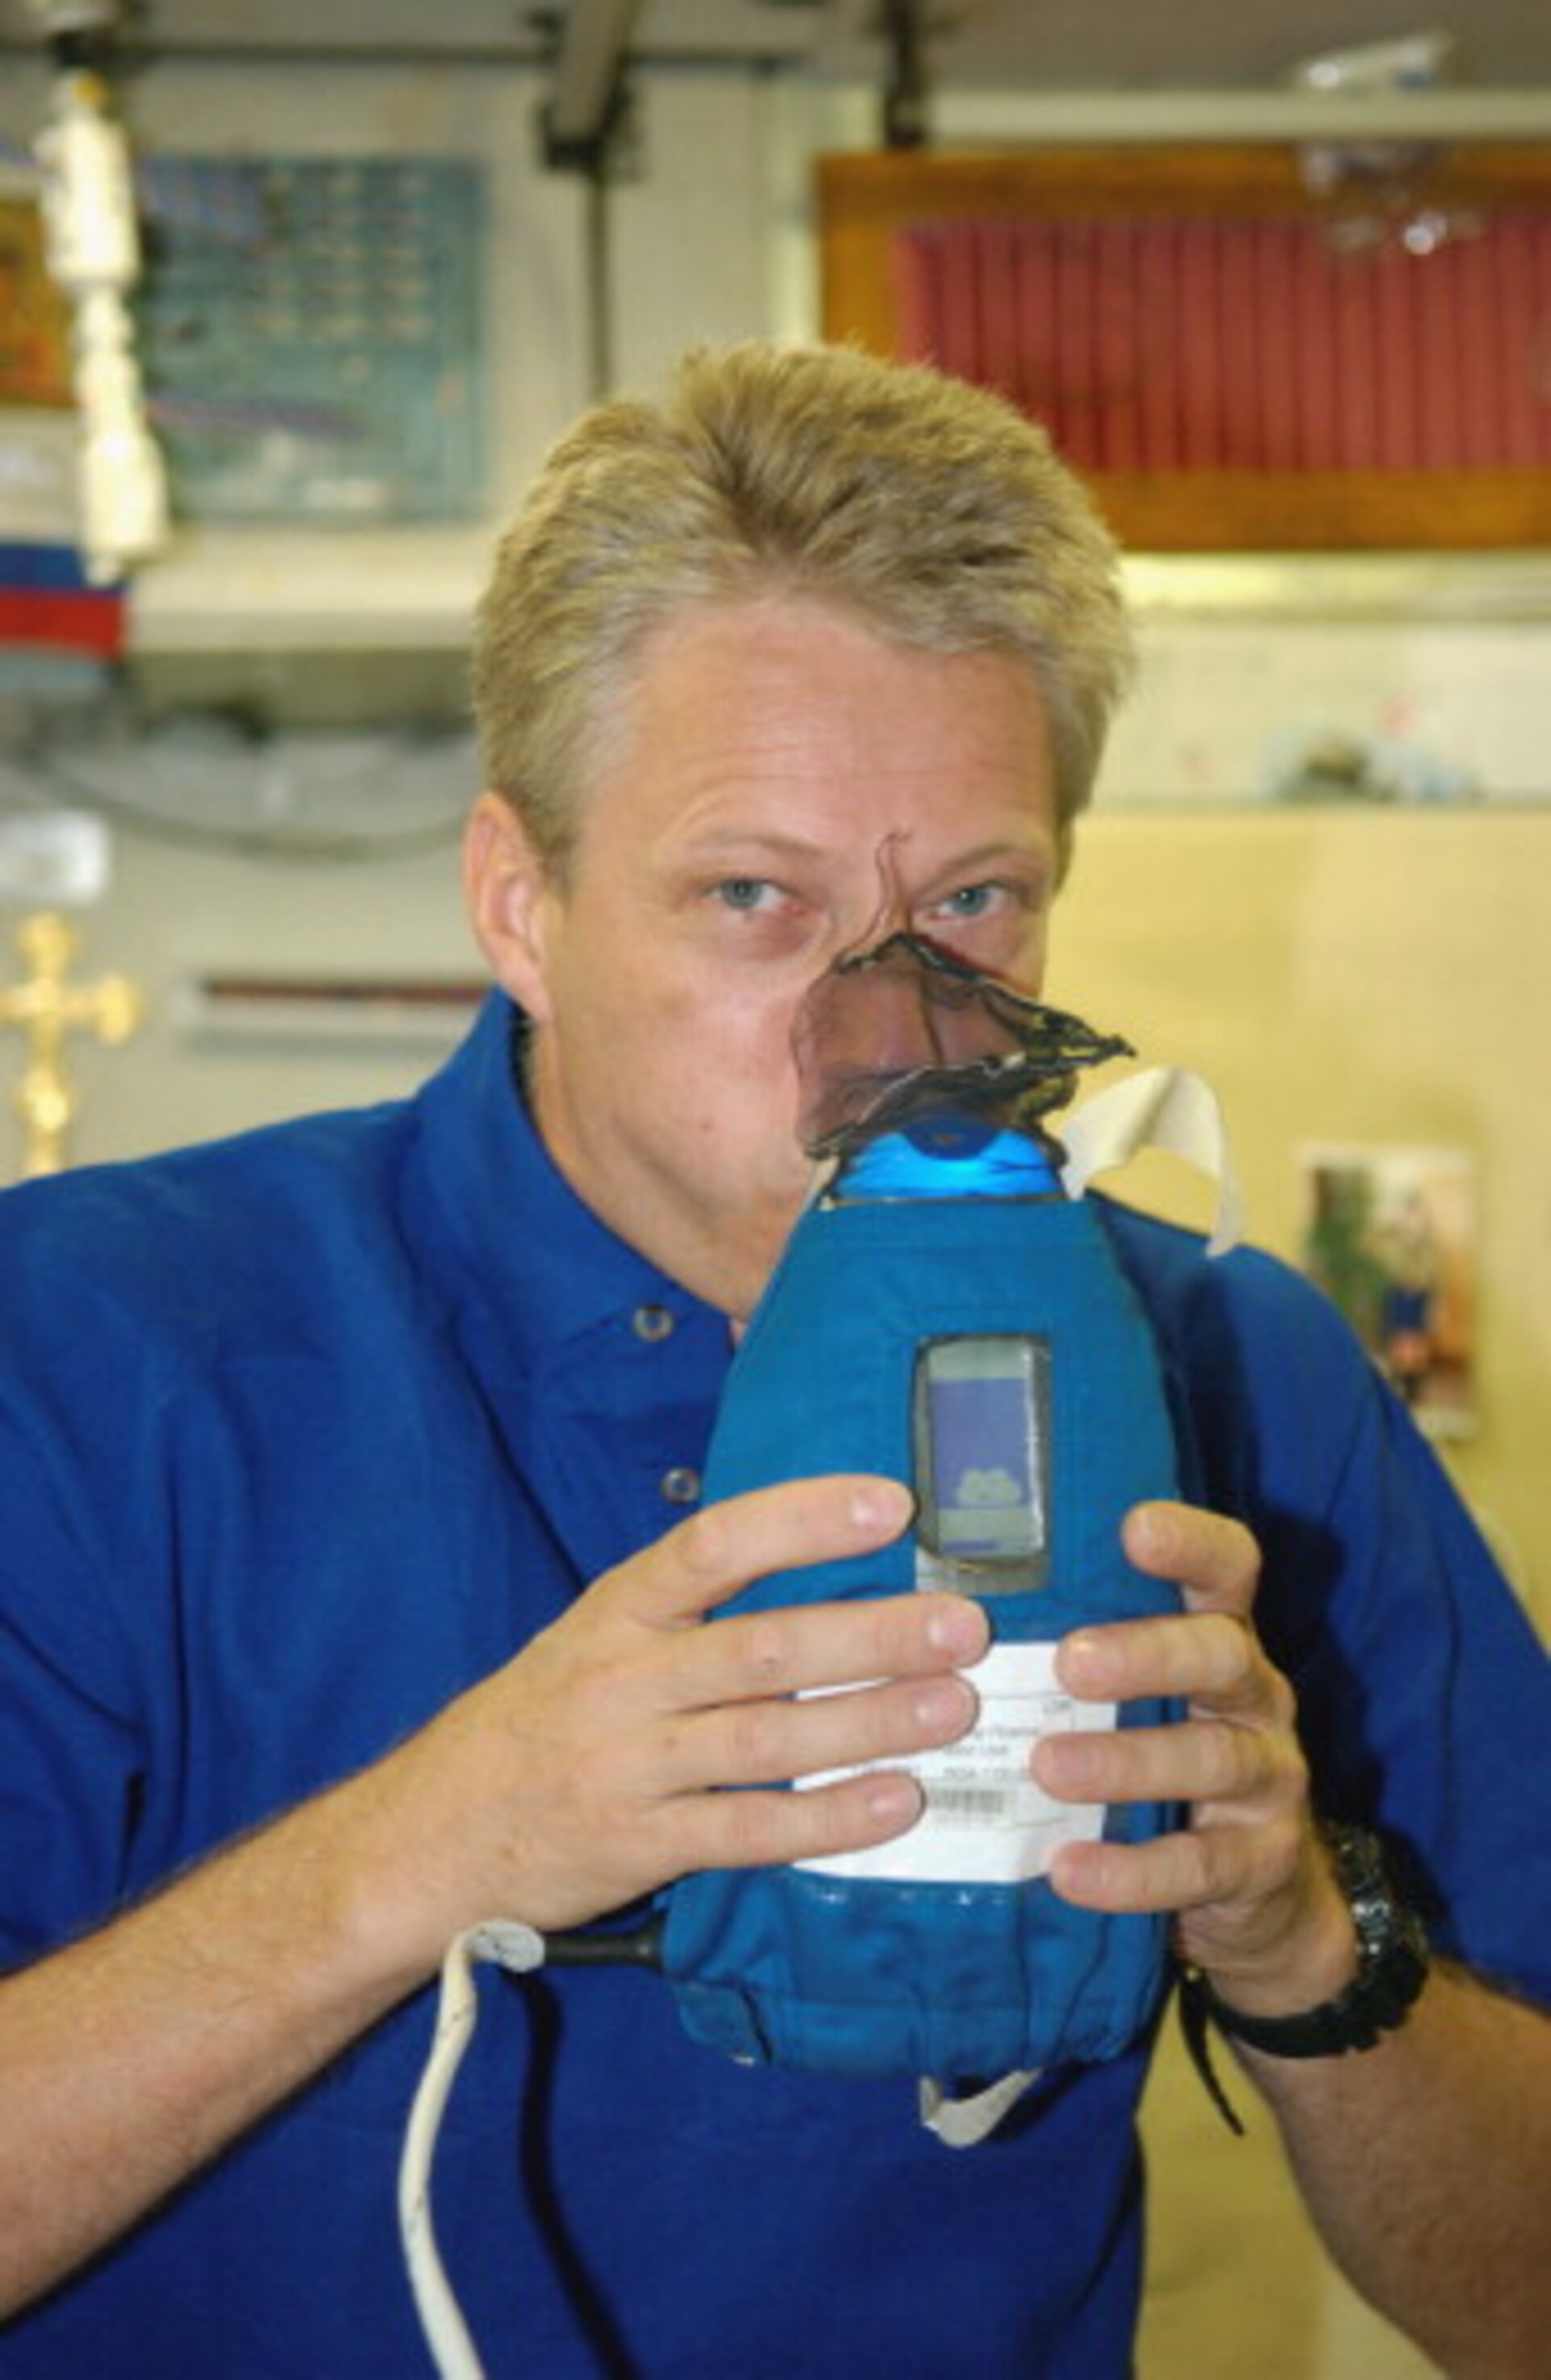 Thomas Reiter, ehemaliger ESA-Astronaut, bei wissenschaftlichen Arbeiten am Nitric Oxide Analyzer (NOA) im Jahr 2006